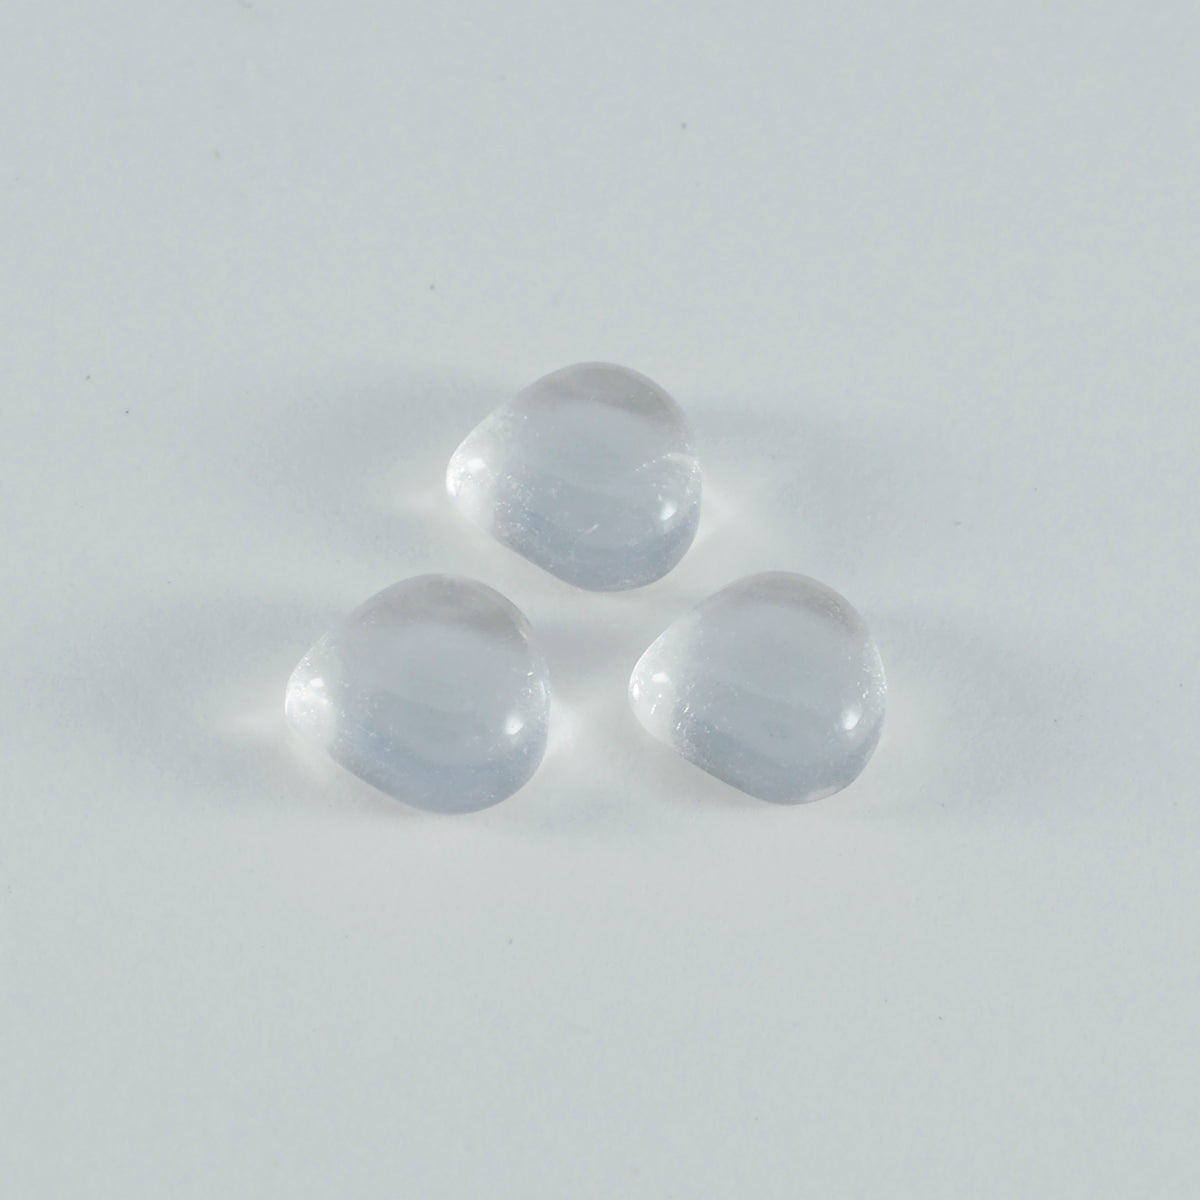 Riyogems 1PC witte kristallen kwarts cabochon 12x12 mm hartvorm AAA kwaliteit edelstenen